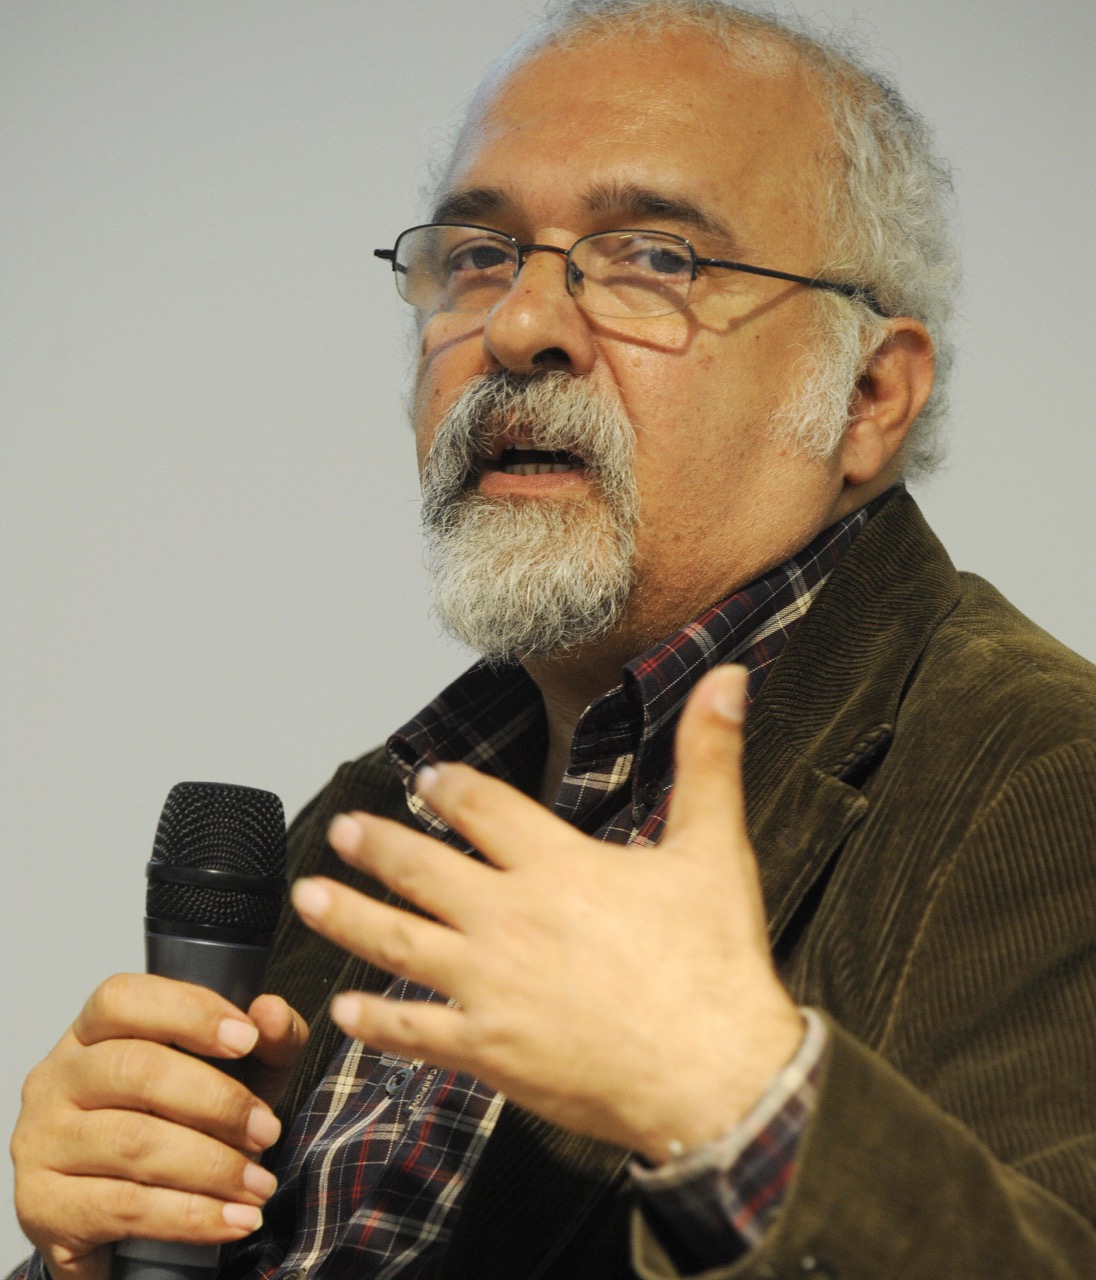 Turkish writer Ragip Zarakolu takes part in a discussion at the Frankfurt Book Fair, in Frankfurt, Germany, 15 October 2008